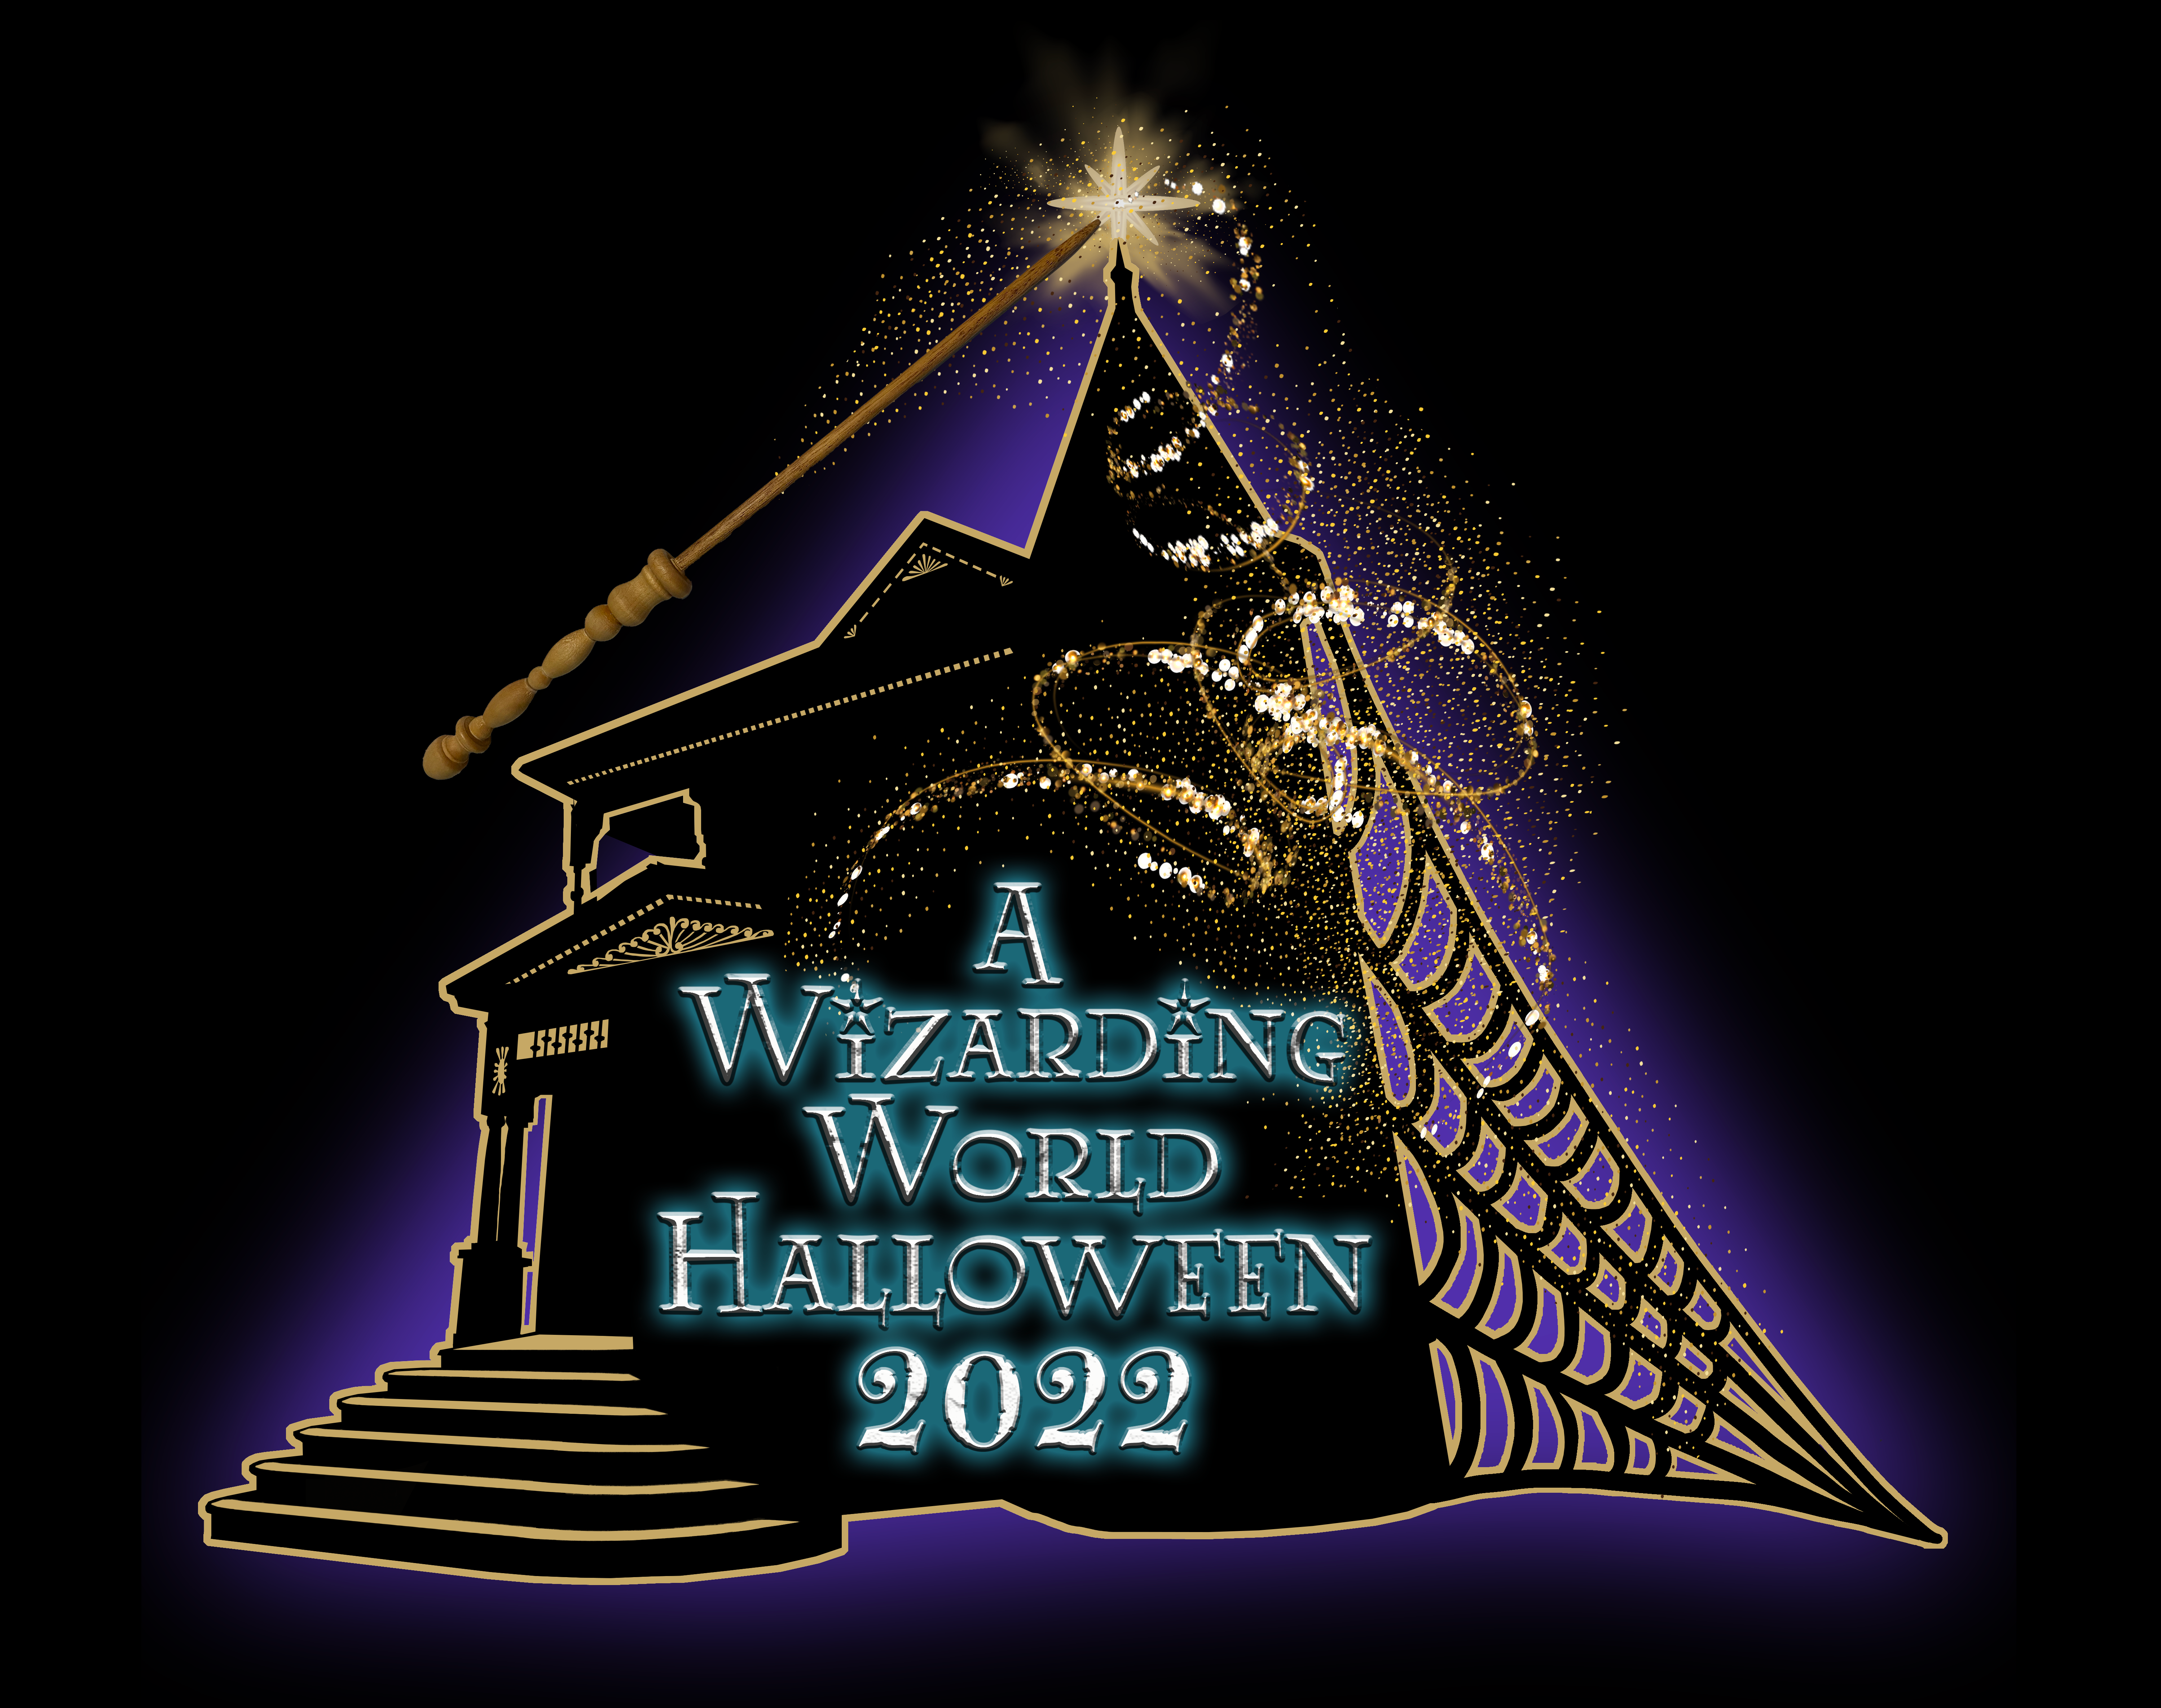 A Wizarding World Halloween 2022